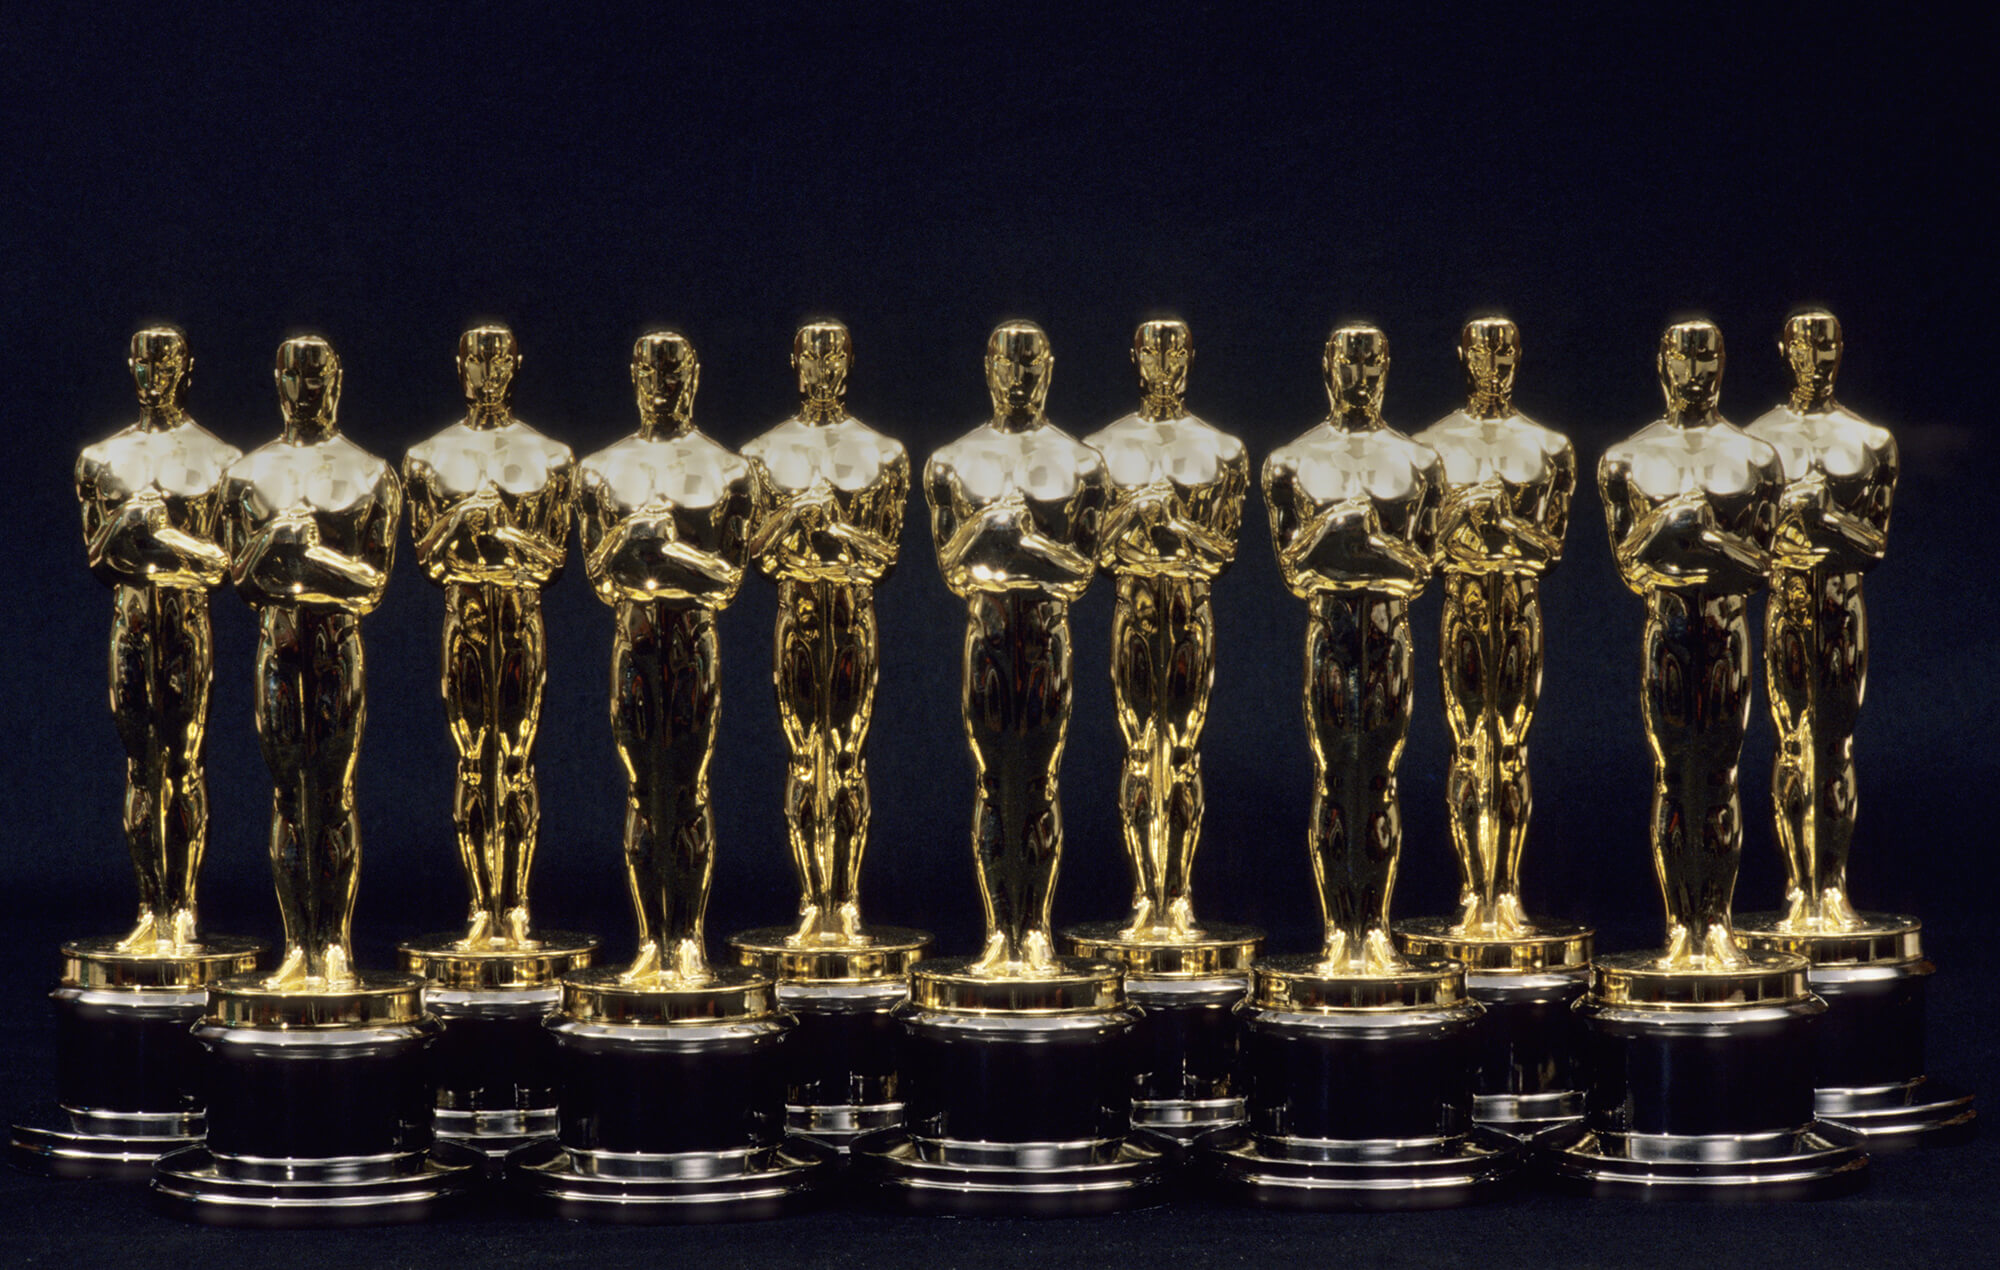 Uskoro je 95. dodjela Oscara, koja će se održati u Los Angelesu u noći s 12. na 13. marta. Nominacije za dodjelu objavljene su krajem januara